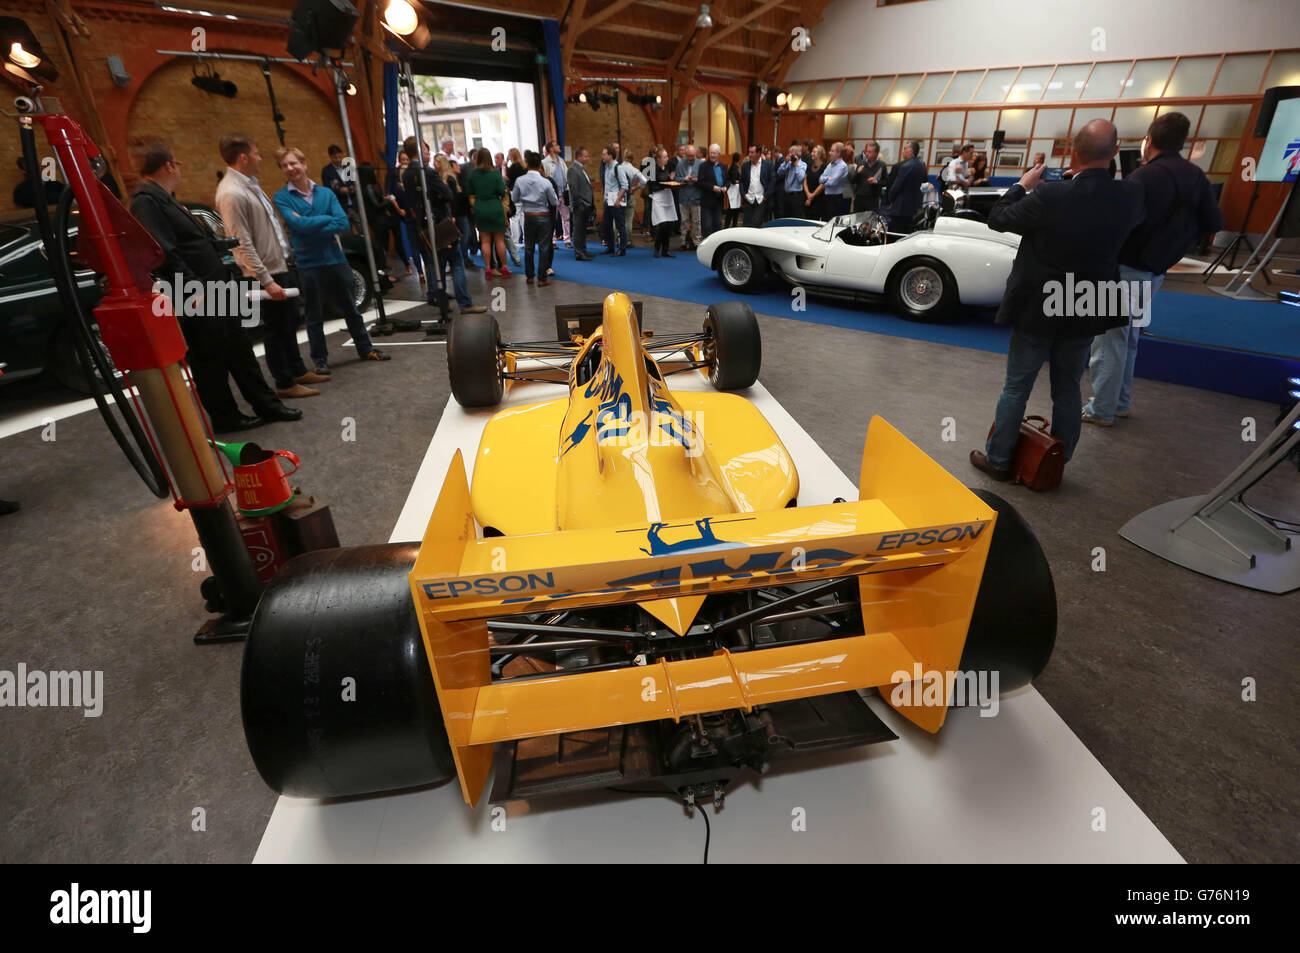 Une voiture Lotus F1 1989 exposée lors du lancement du premier London Classic car Show, qui aura lieu à Excel du 8 au 11 janvier 2015, à Kensington, Londres. Banque D'Images